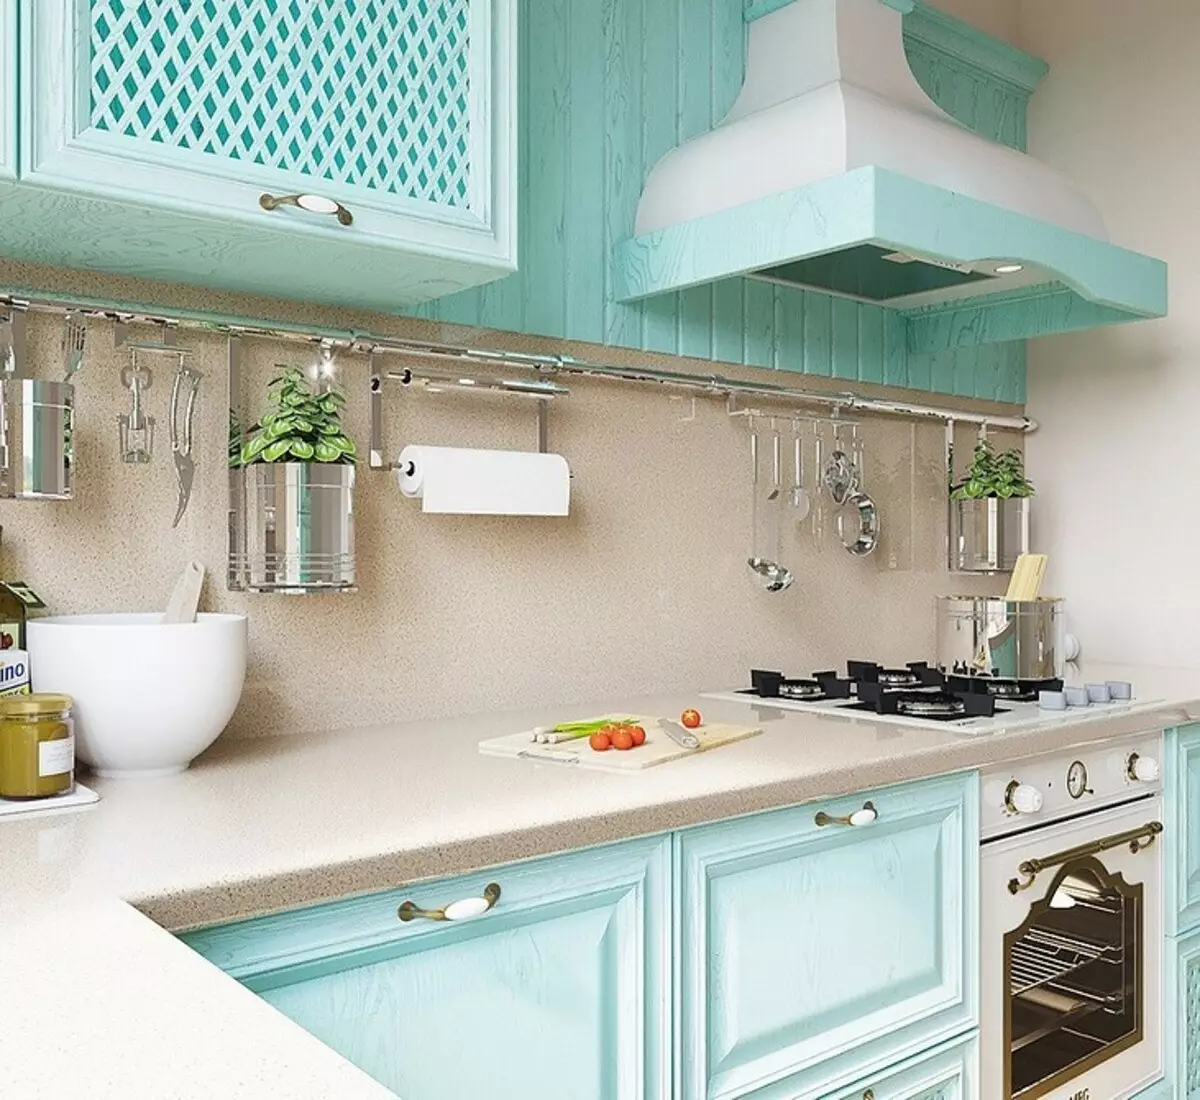 Kuinka luoda kirkkaan keittiön muotoilu turkoosi väri ja estää virheitä? 8228_139